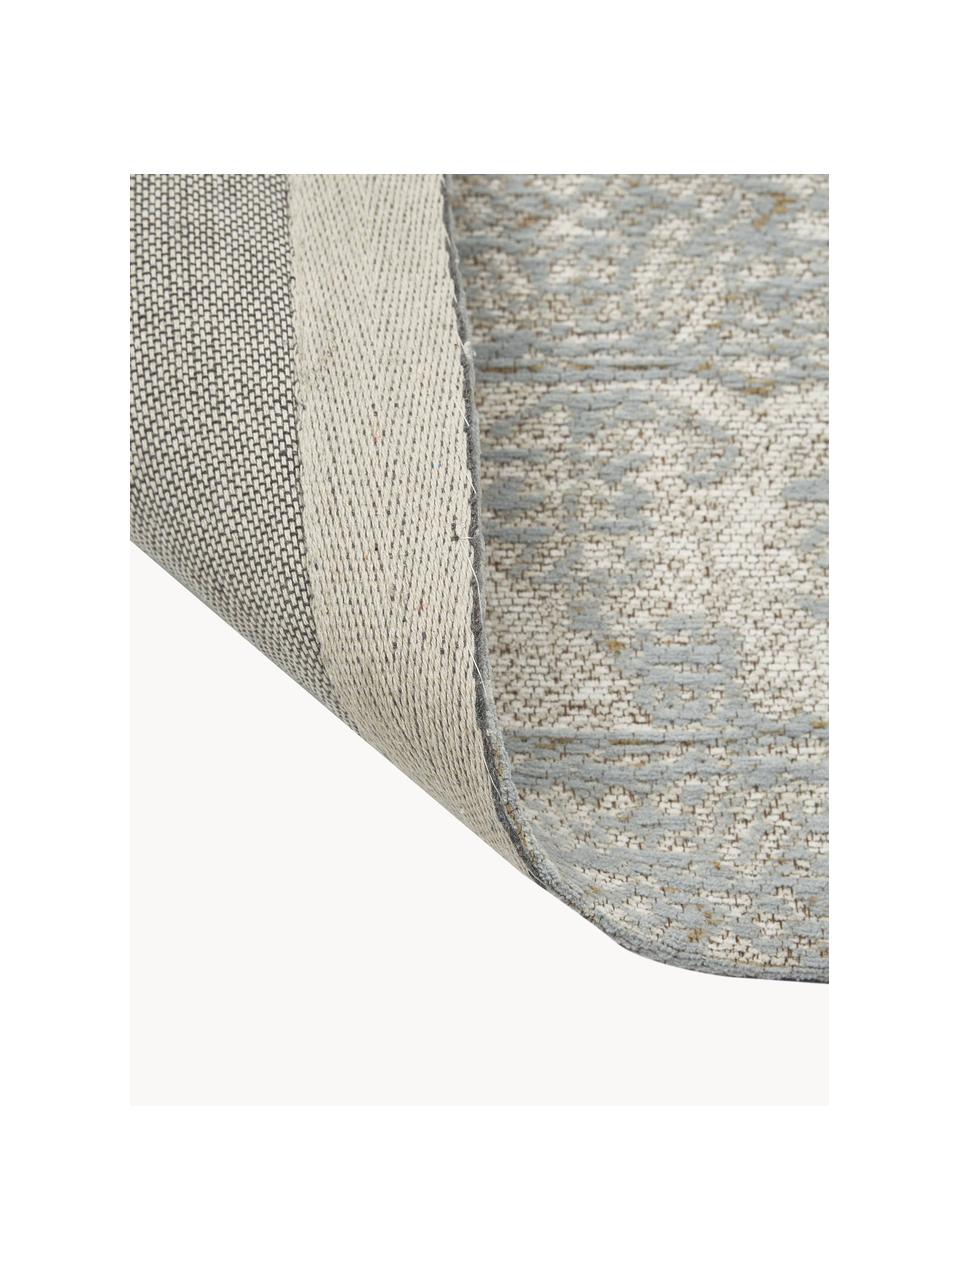 Ručně tkaný žinylkový koberec Magalie, 95 % bavlněná žinylka, 5 % polyester, Světle šedá, krémově bílá, Š 160 cm, D 230 cm (velikost M)